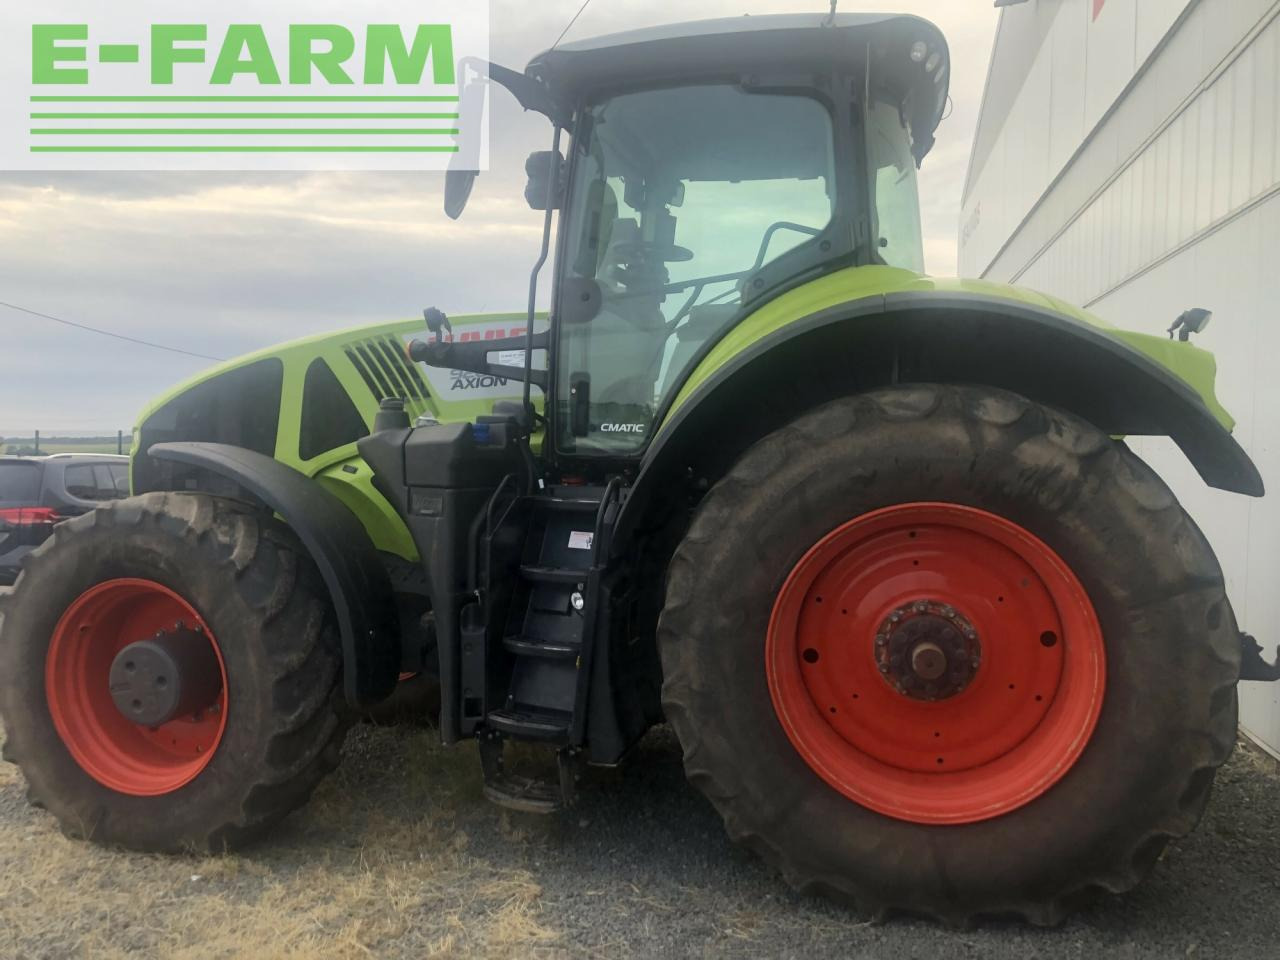 Farm tractor CLAAS axion 920 cmatic